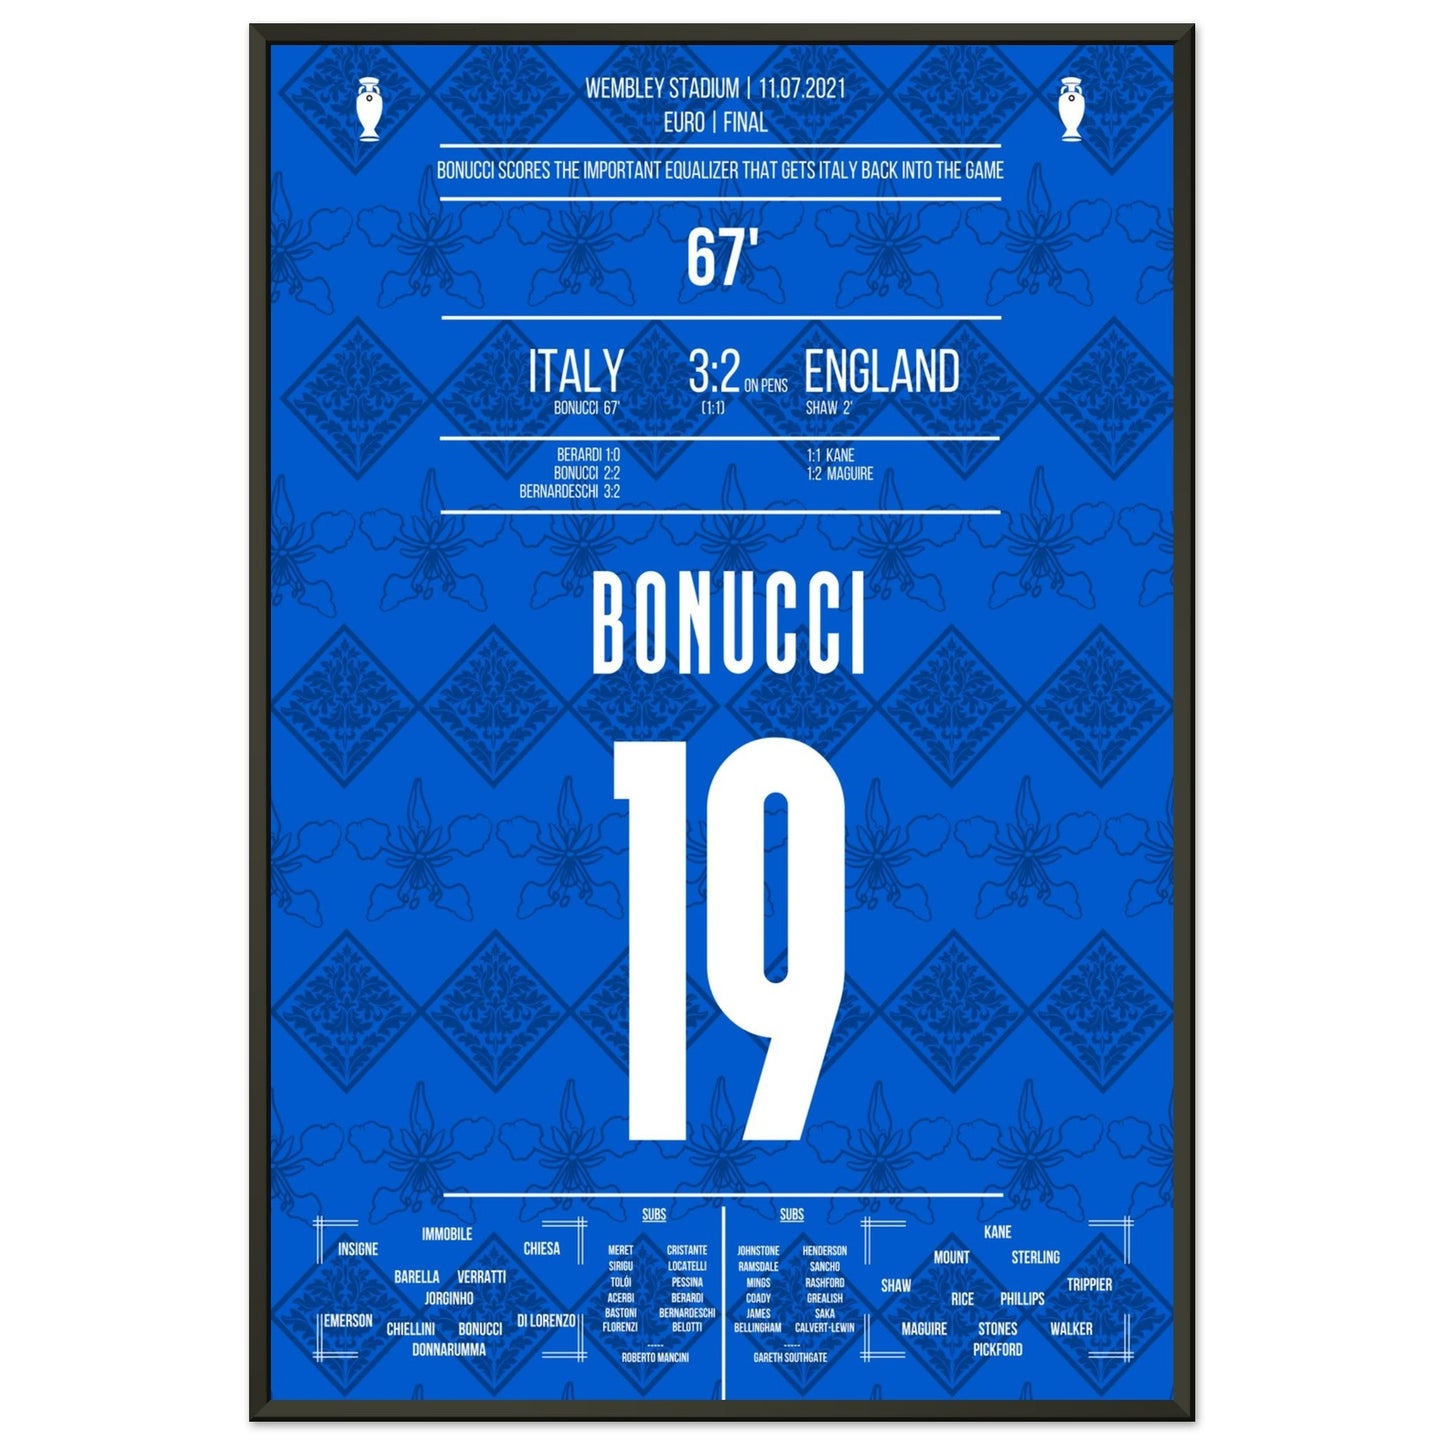 Bonucci trifft zum Ausgleich im Finale der Euro 2021